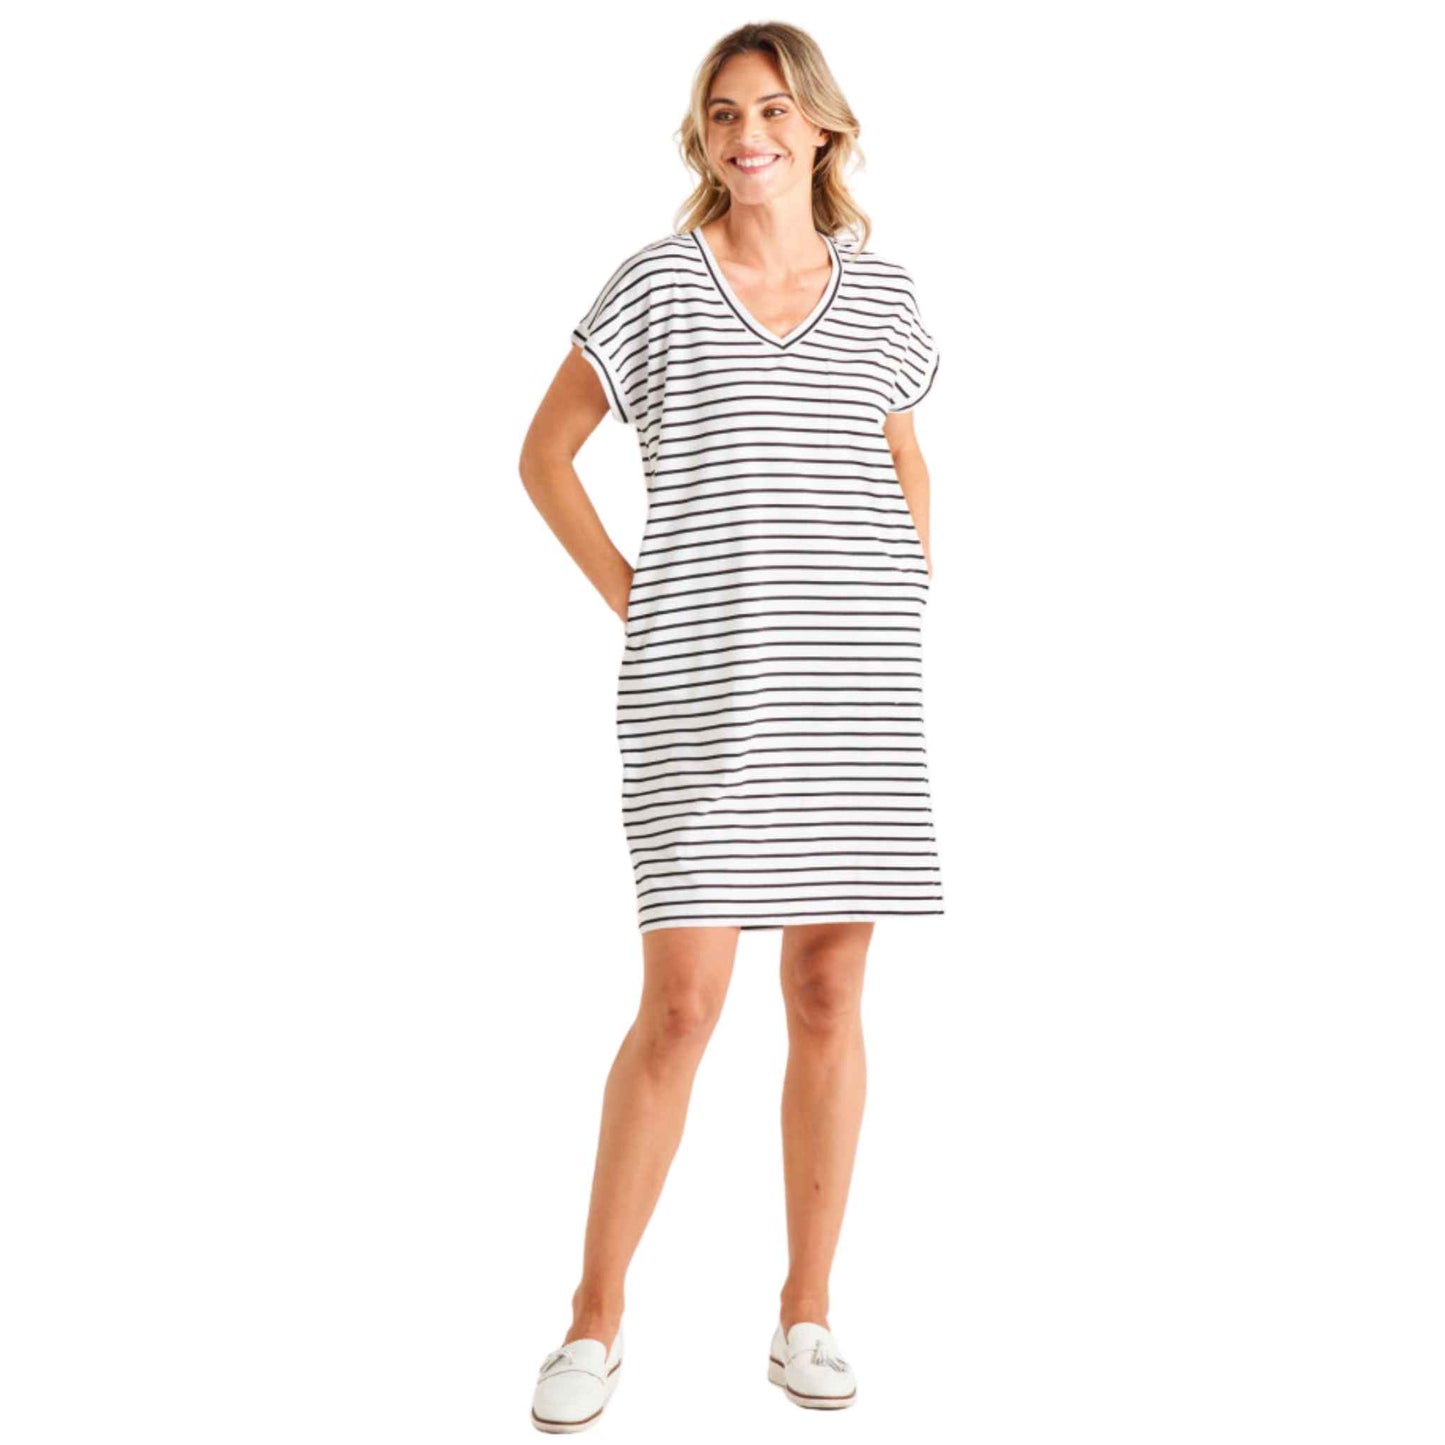 Zena T-Shirt Dress - White/Black Stripe